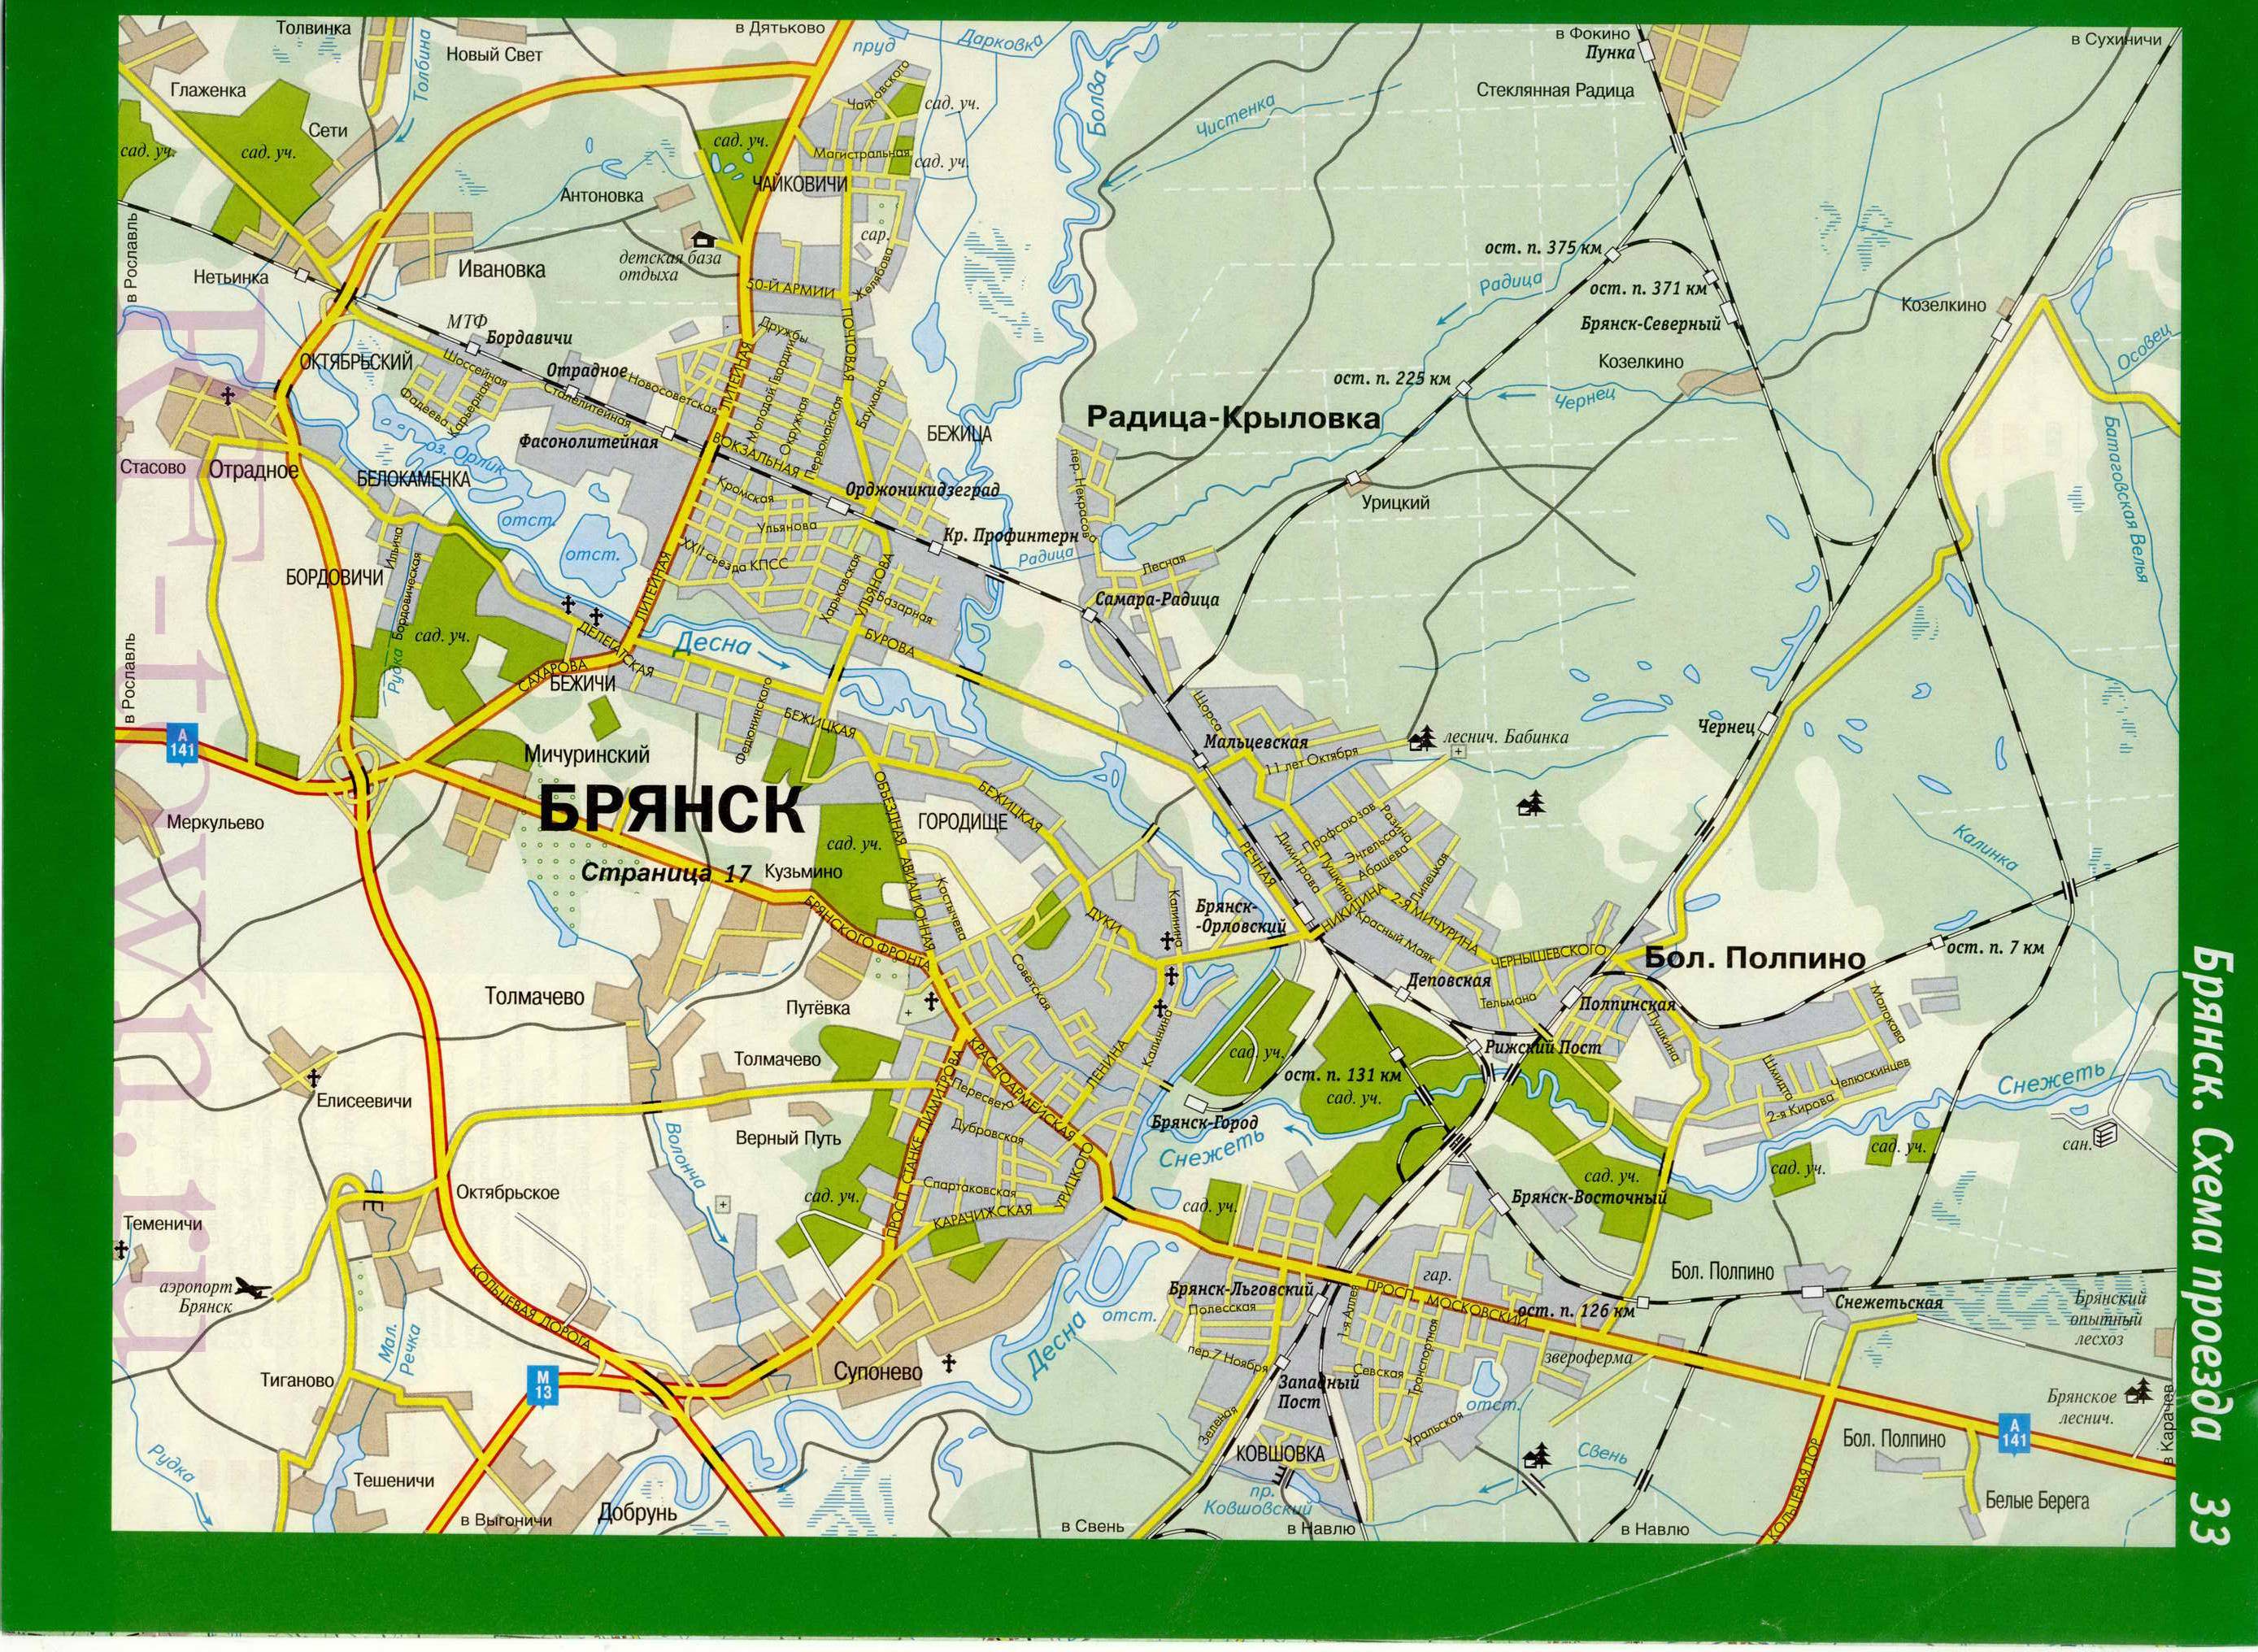  Карта схема Брянска. Автомобильная карта города Брянск со схемой проезда, A0 - 